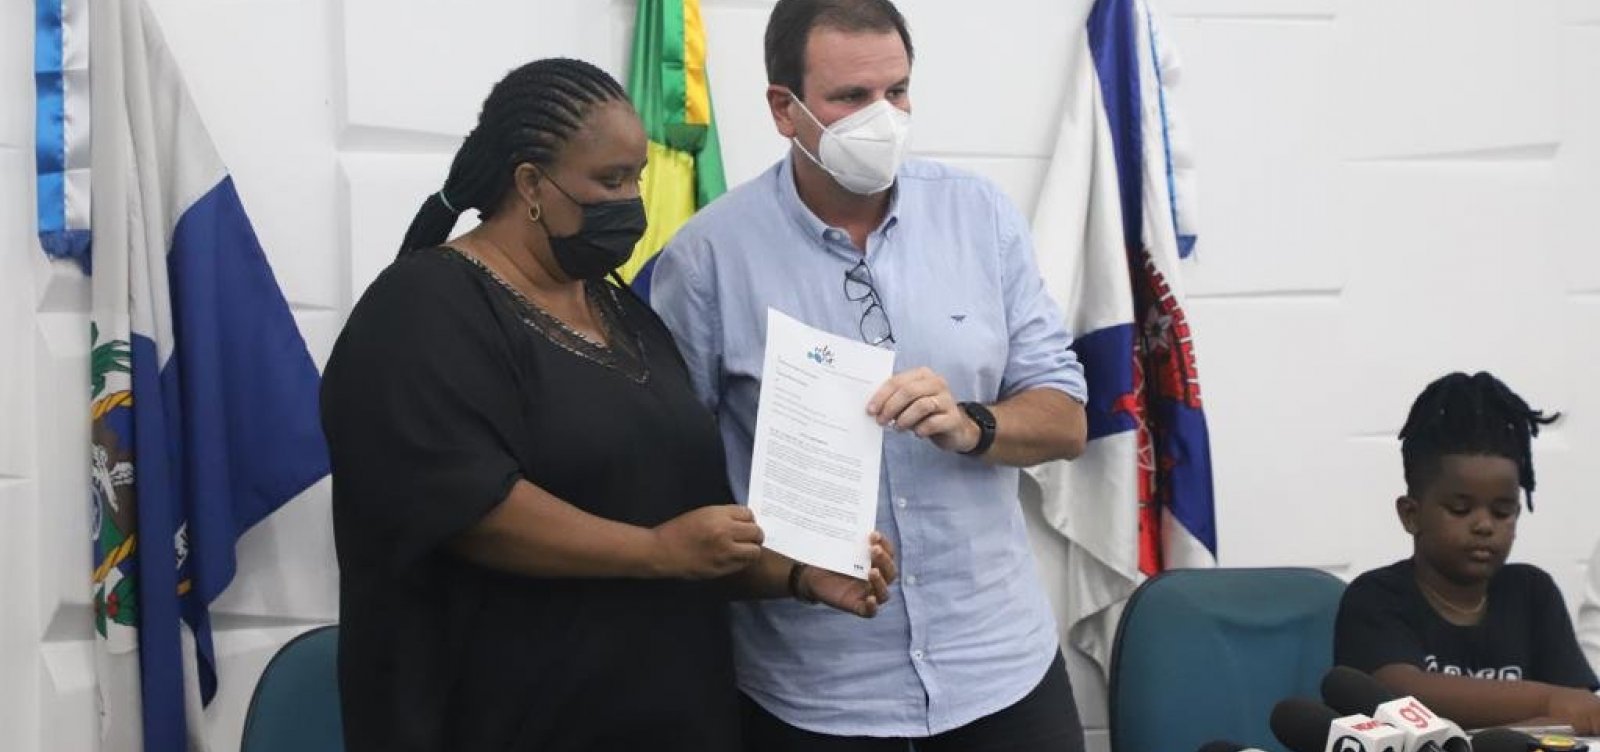 Prefeitura do Rio formaliza a entrega da concessão de quiosques para a família de Moïse